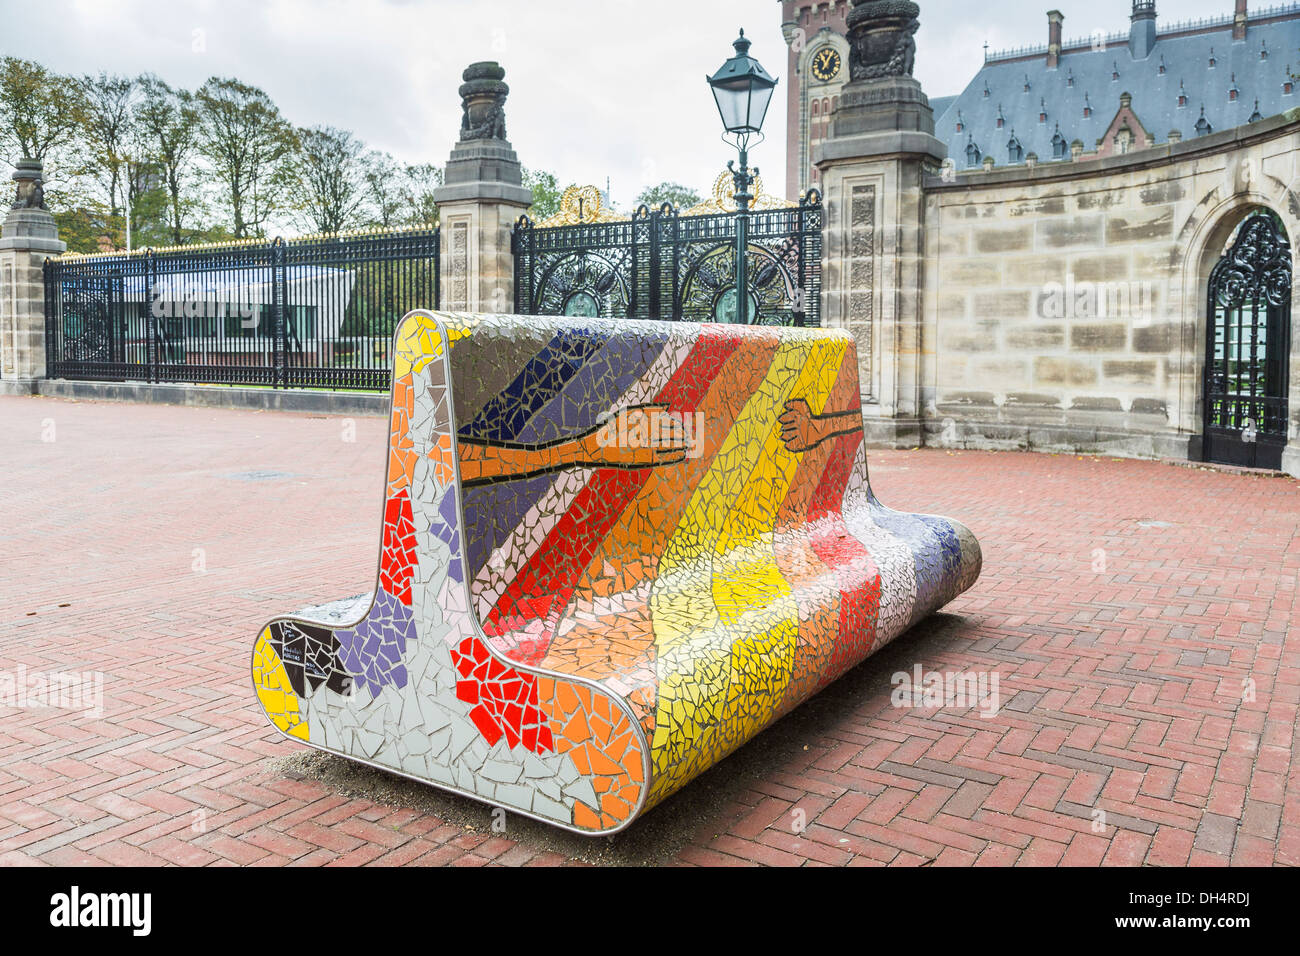 Bunte Mosaik Stein Sitzbank symbolisiert Freundschaft außerhalb der Friedenspalast, Sitz des Internationalen Gerichtshofs in Den Haag, Holland Stockfoto